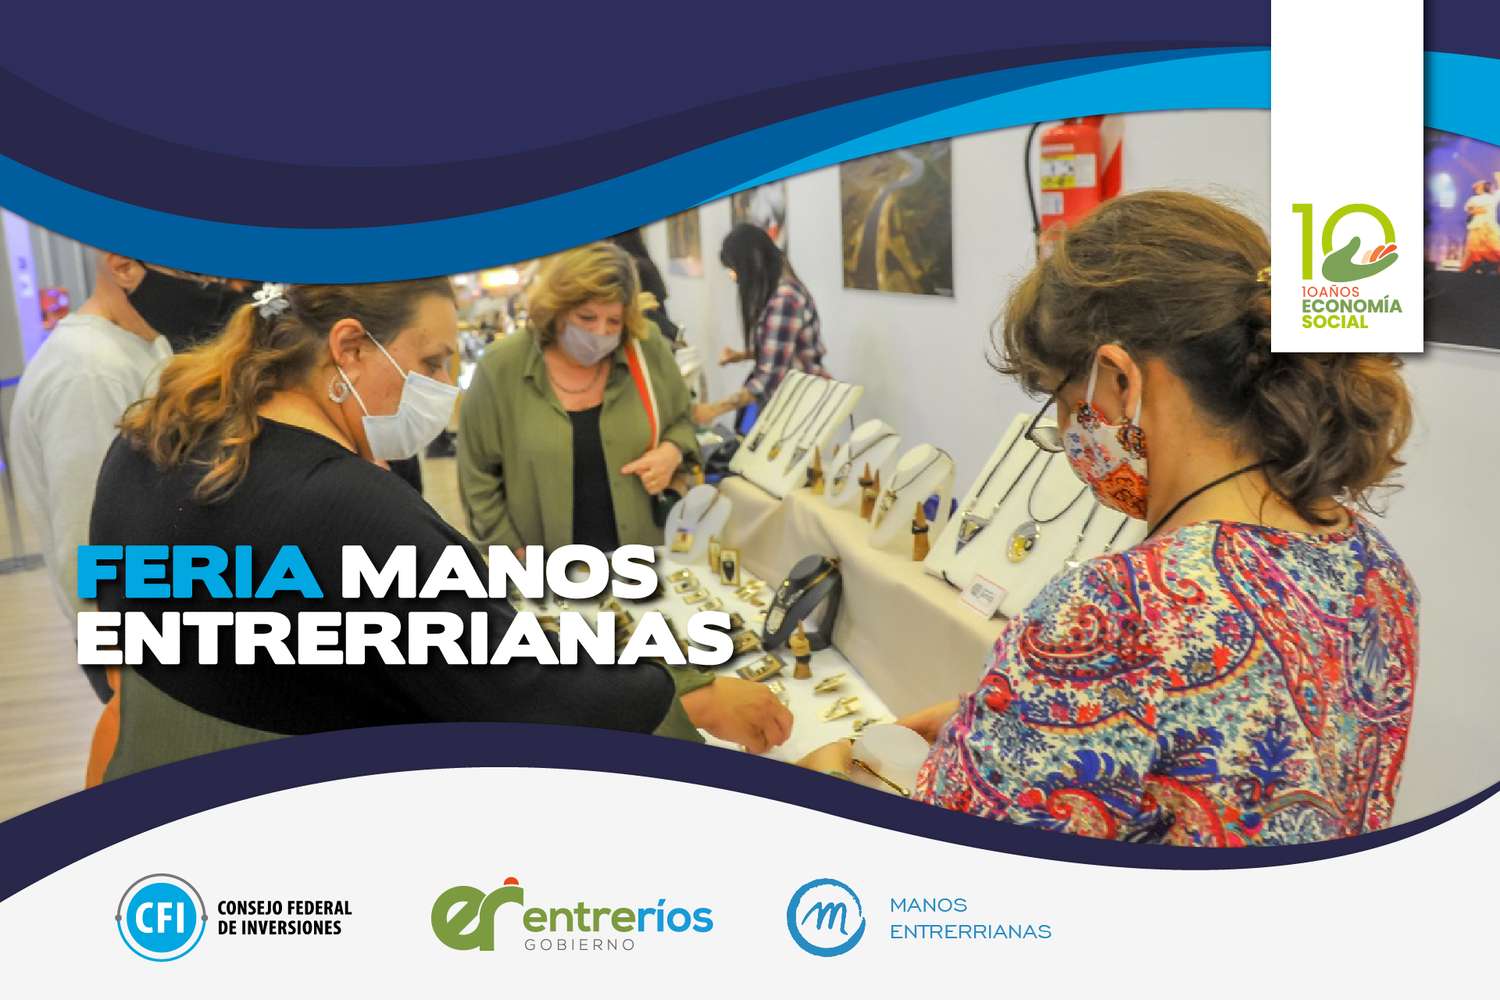 Feria Manos Entrerrianas: participan mas de 120 emprendimientos